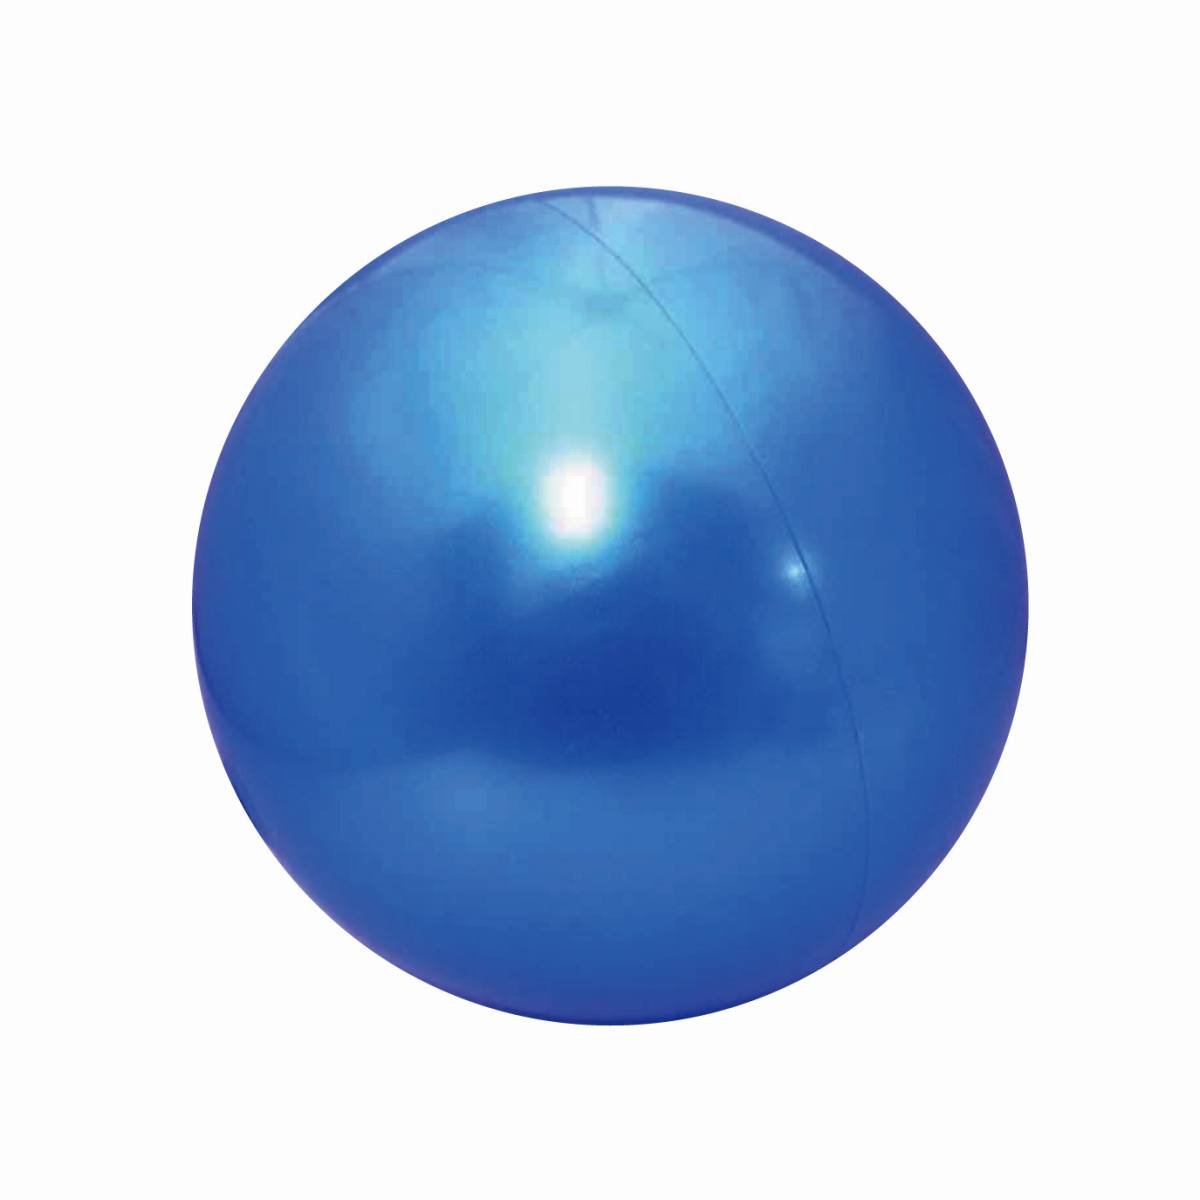 市場 5 Offクーポン配布中 4色カラーボールセット プ ル ボールハウス おもちゃ 玩具 ボール カラフル 水遊び 補充用 ボールプール